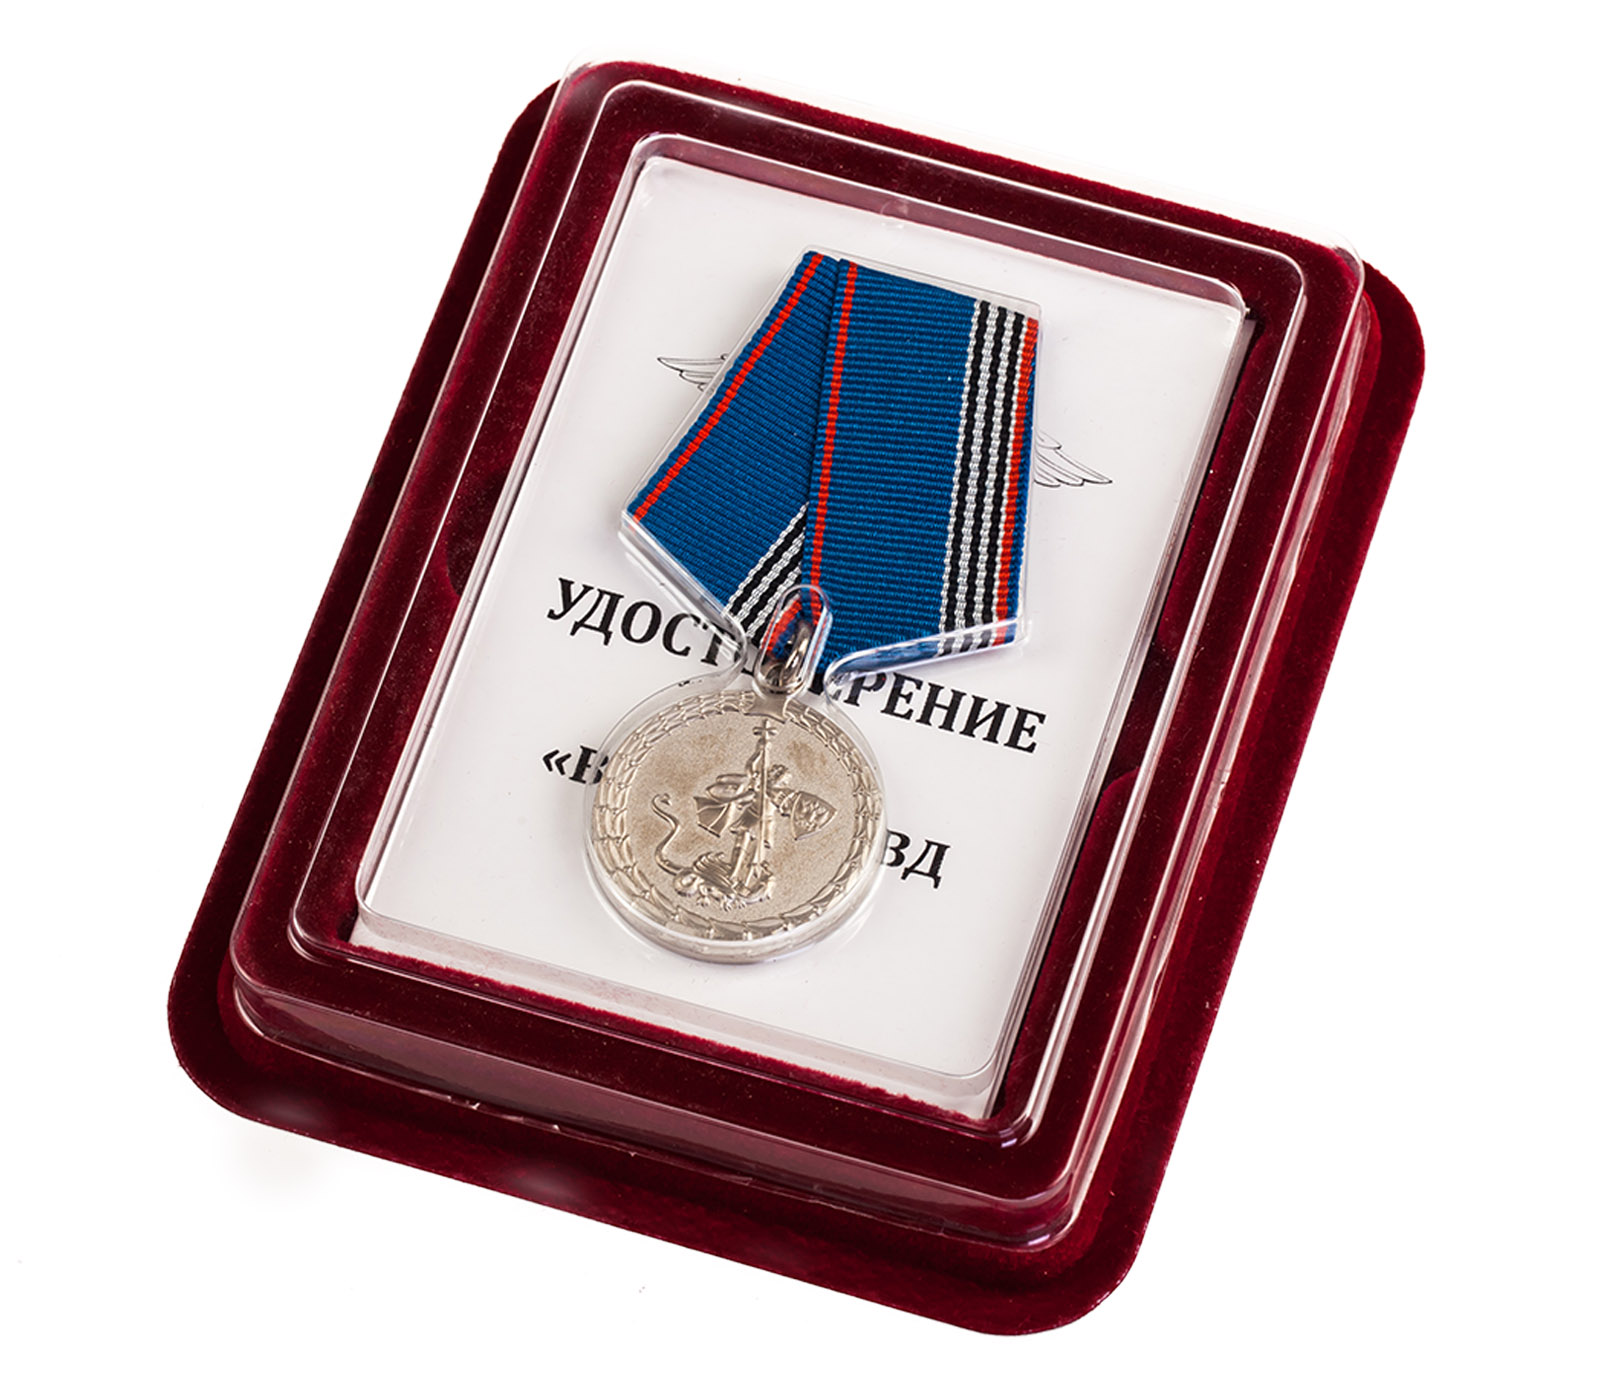 Медаль "Ветерану МВД России" в нарядном футляре из флока 